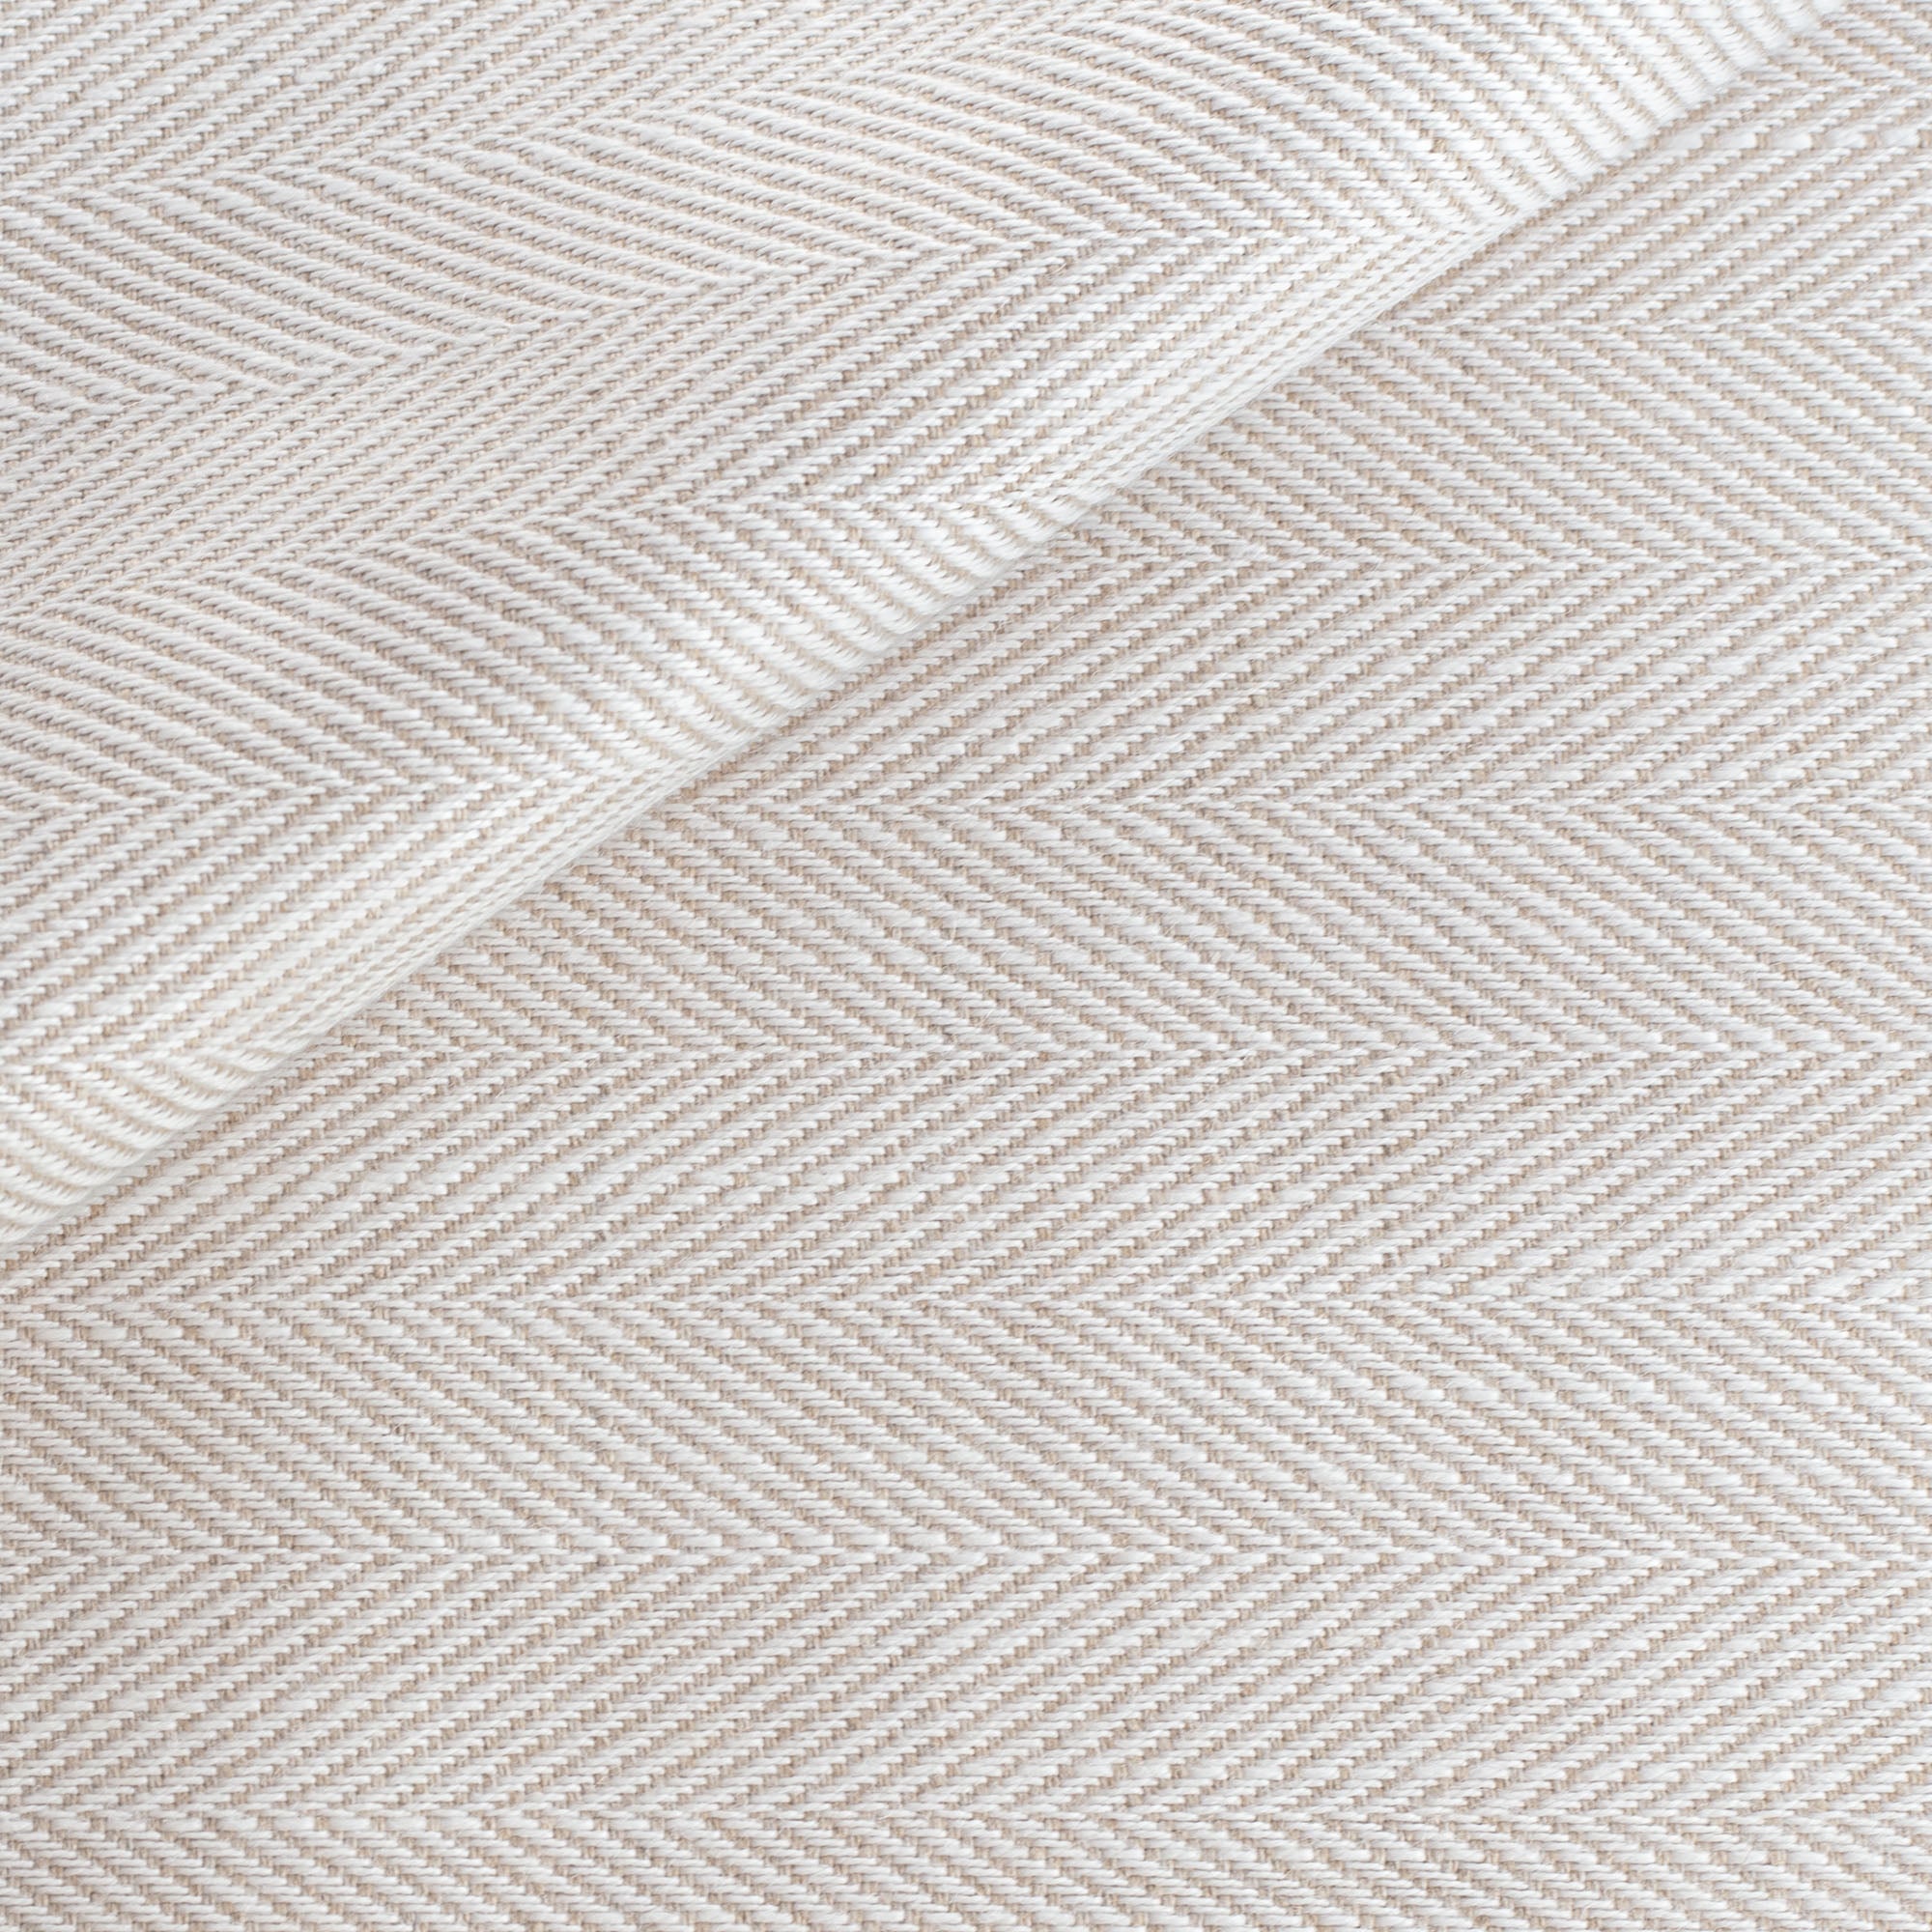 a cream and beige herringbone performance fabric 